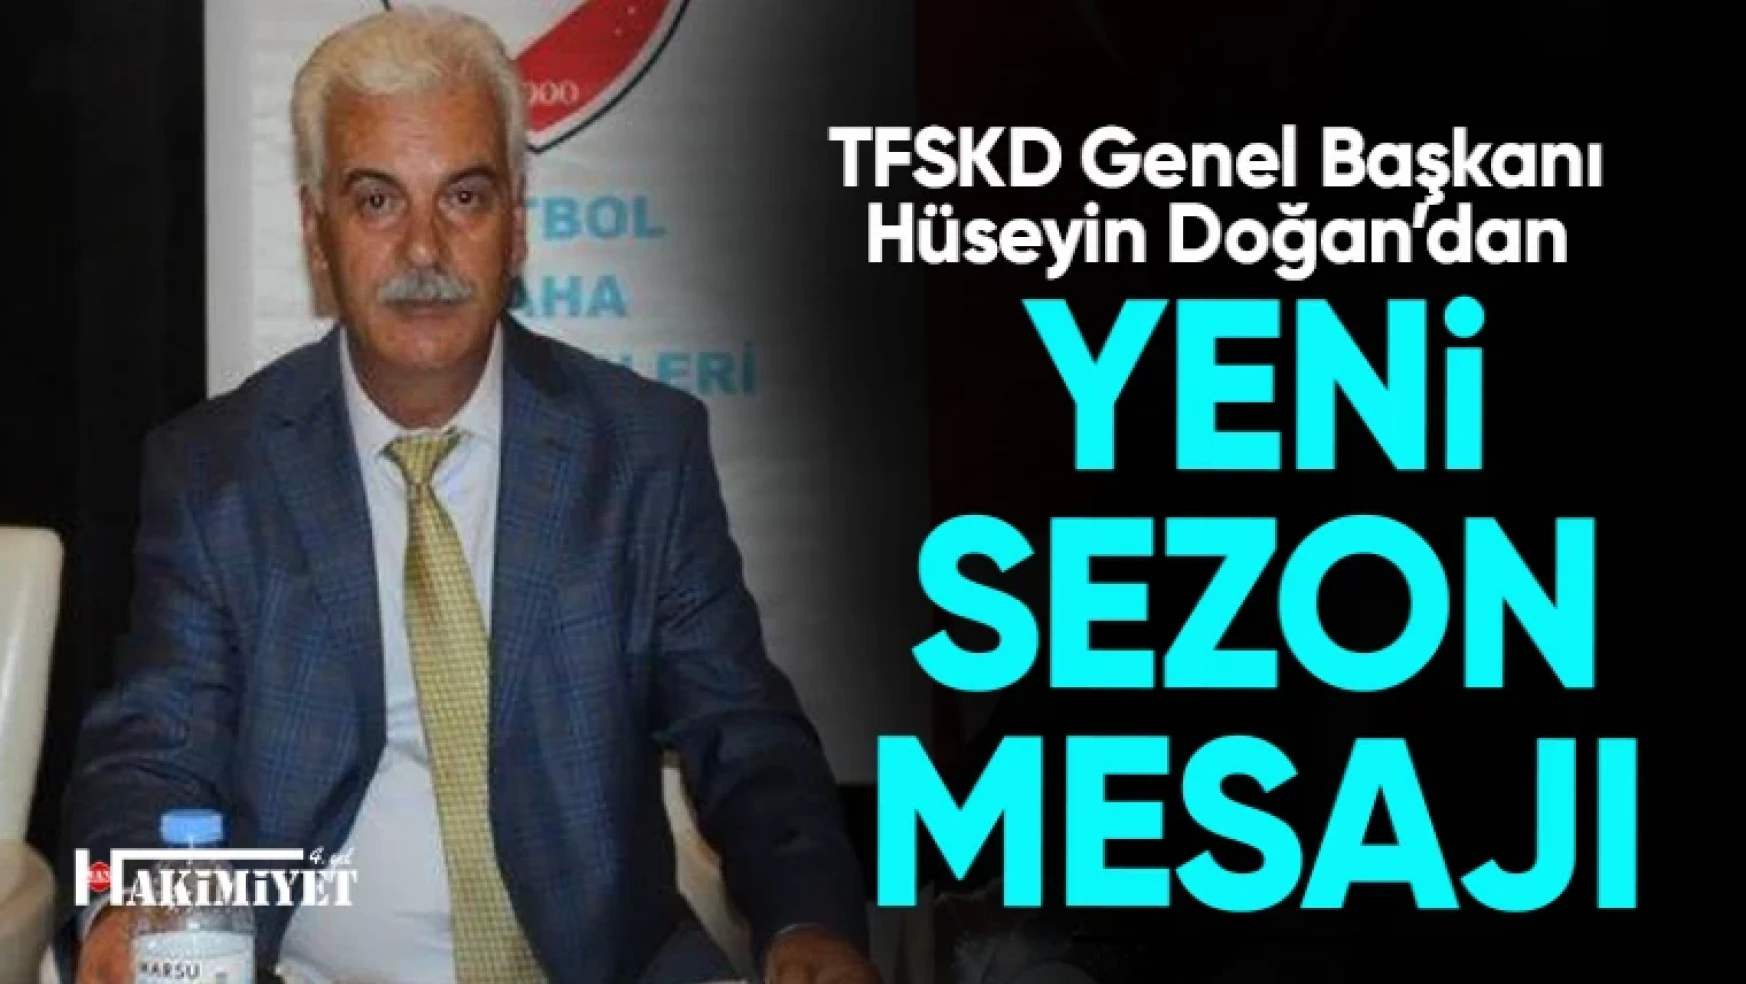 TFSKD Genel Başkanı Hüseyin Doğan'dan yeni sezon mesajı